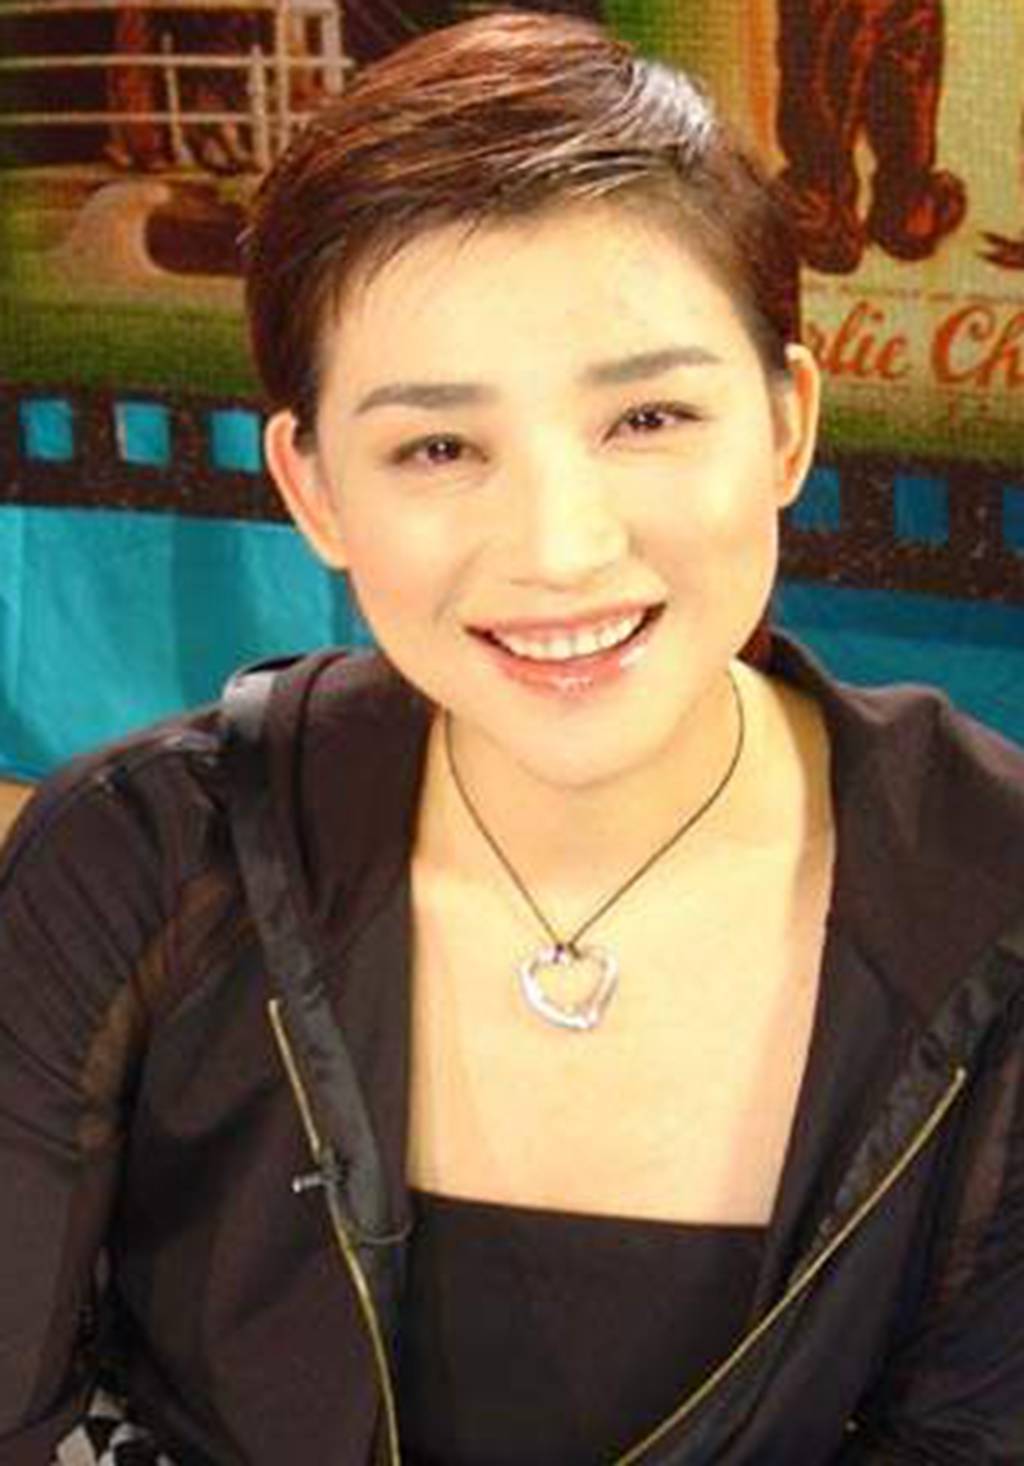 也是河北台曾经一位出色的主持人王玲玲,她是模特出身,在央视也主持过